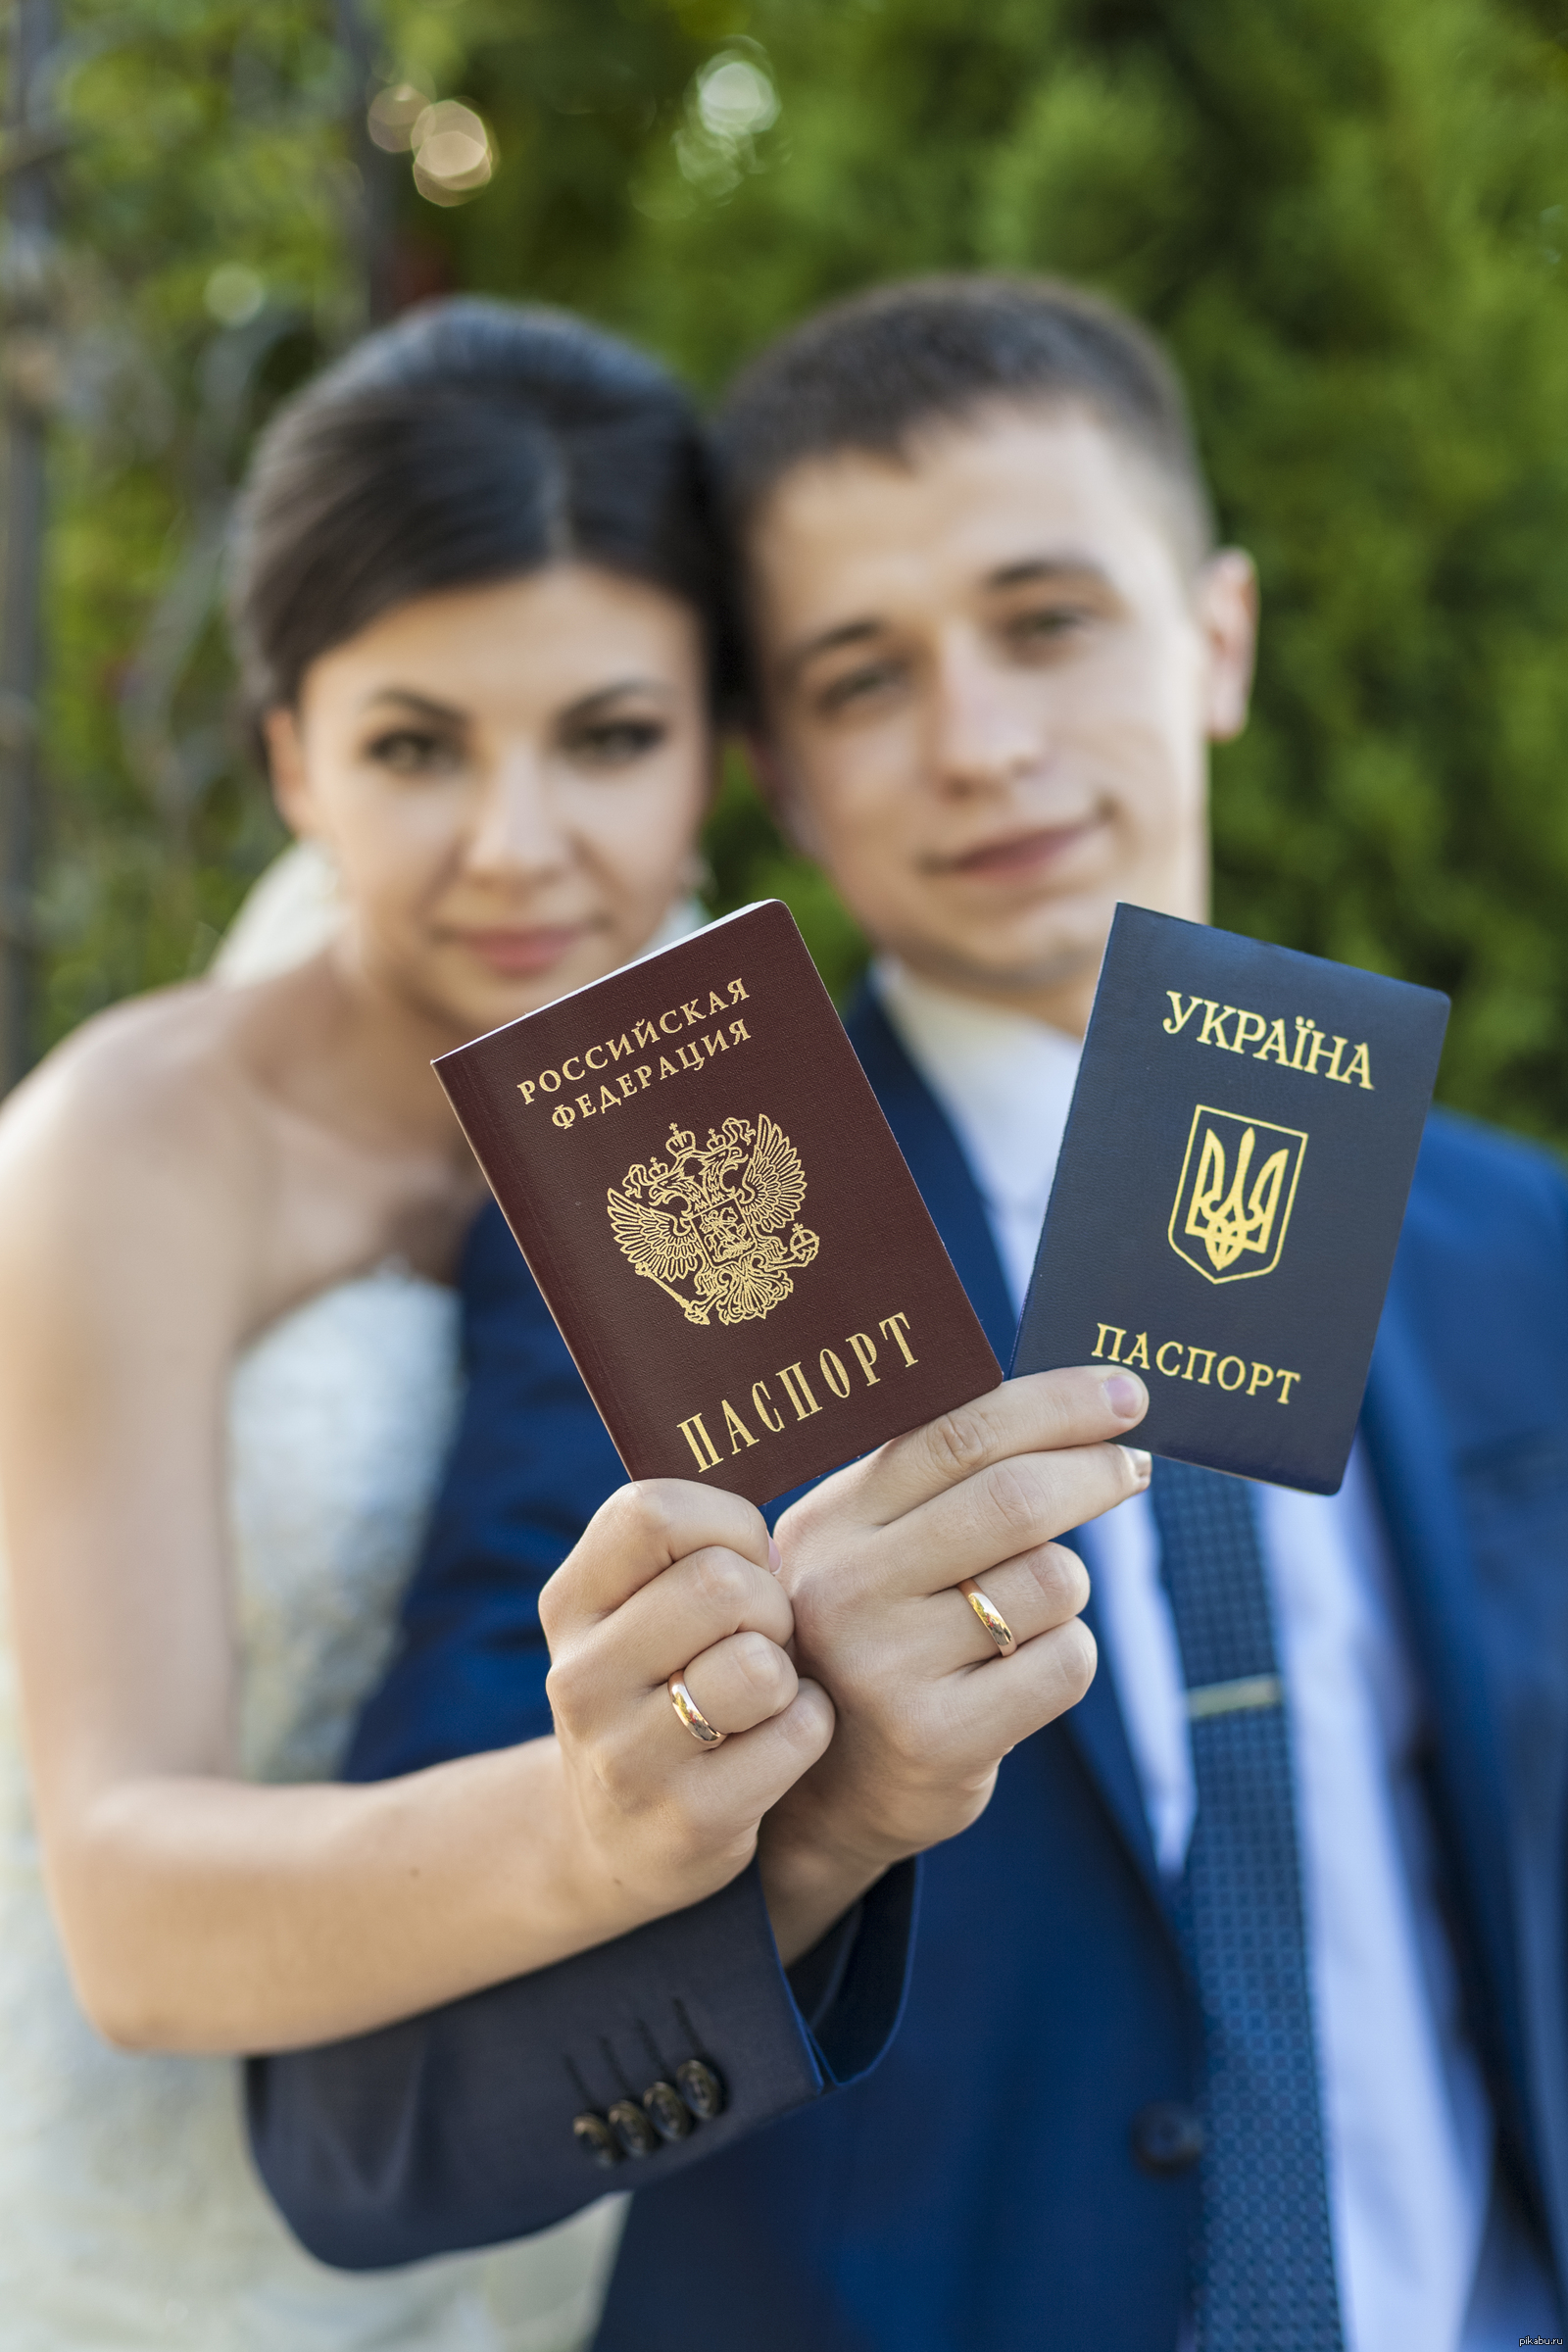 Получить вид на жительство украины. Украинка и русский с паспортами. Брак с иностранным гражданином. Гражданство Украины.